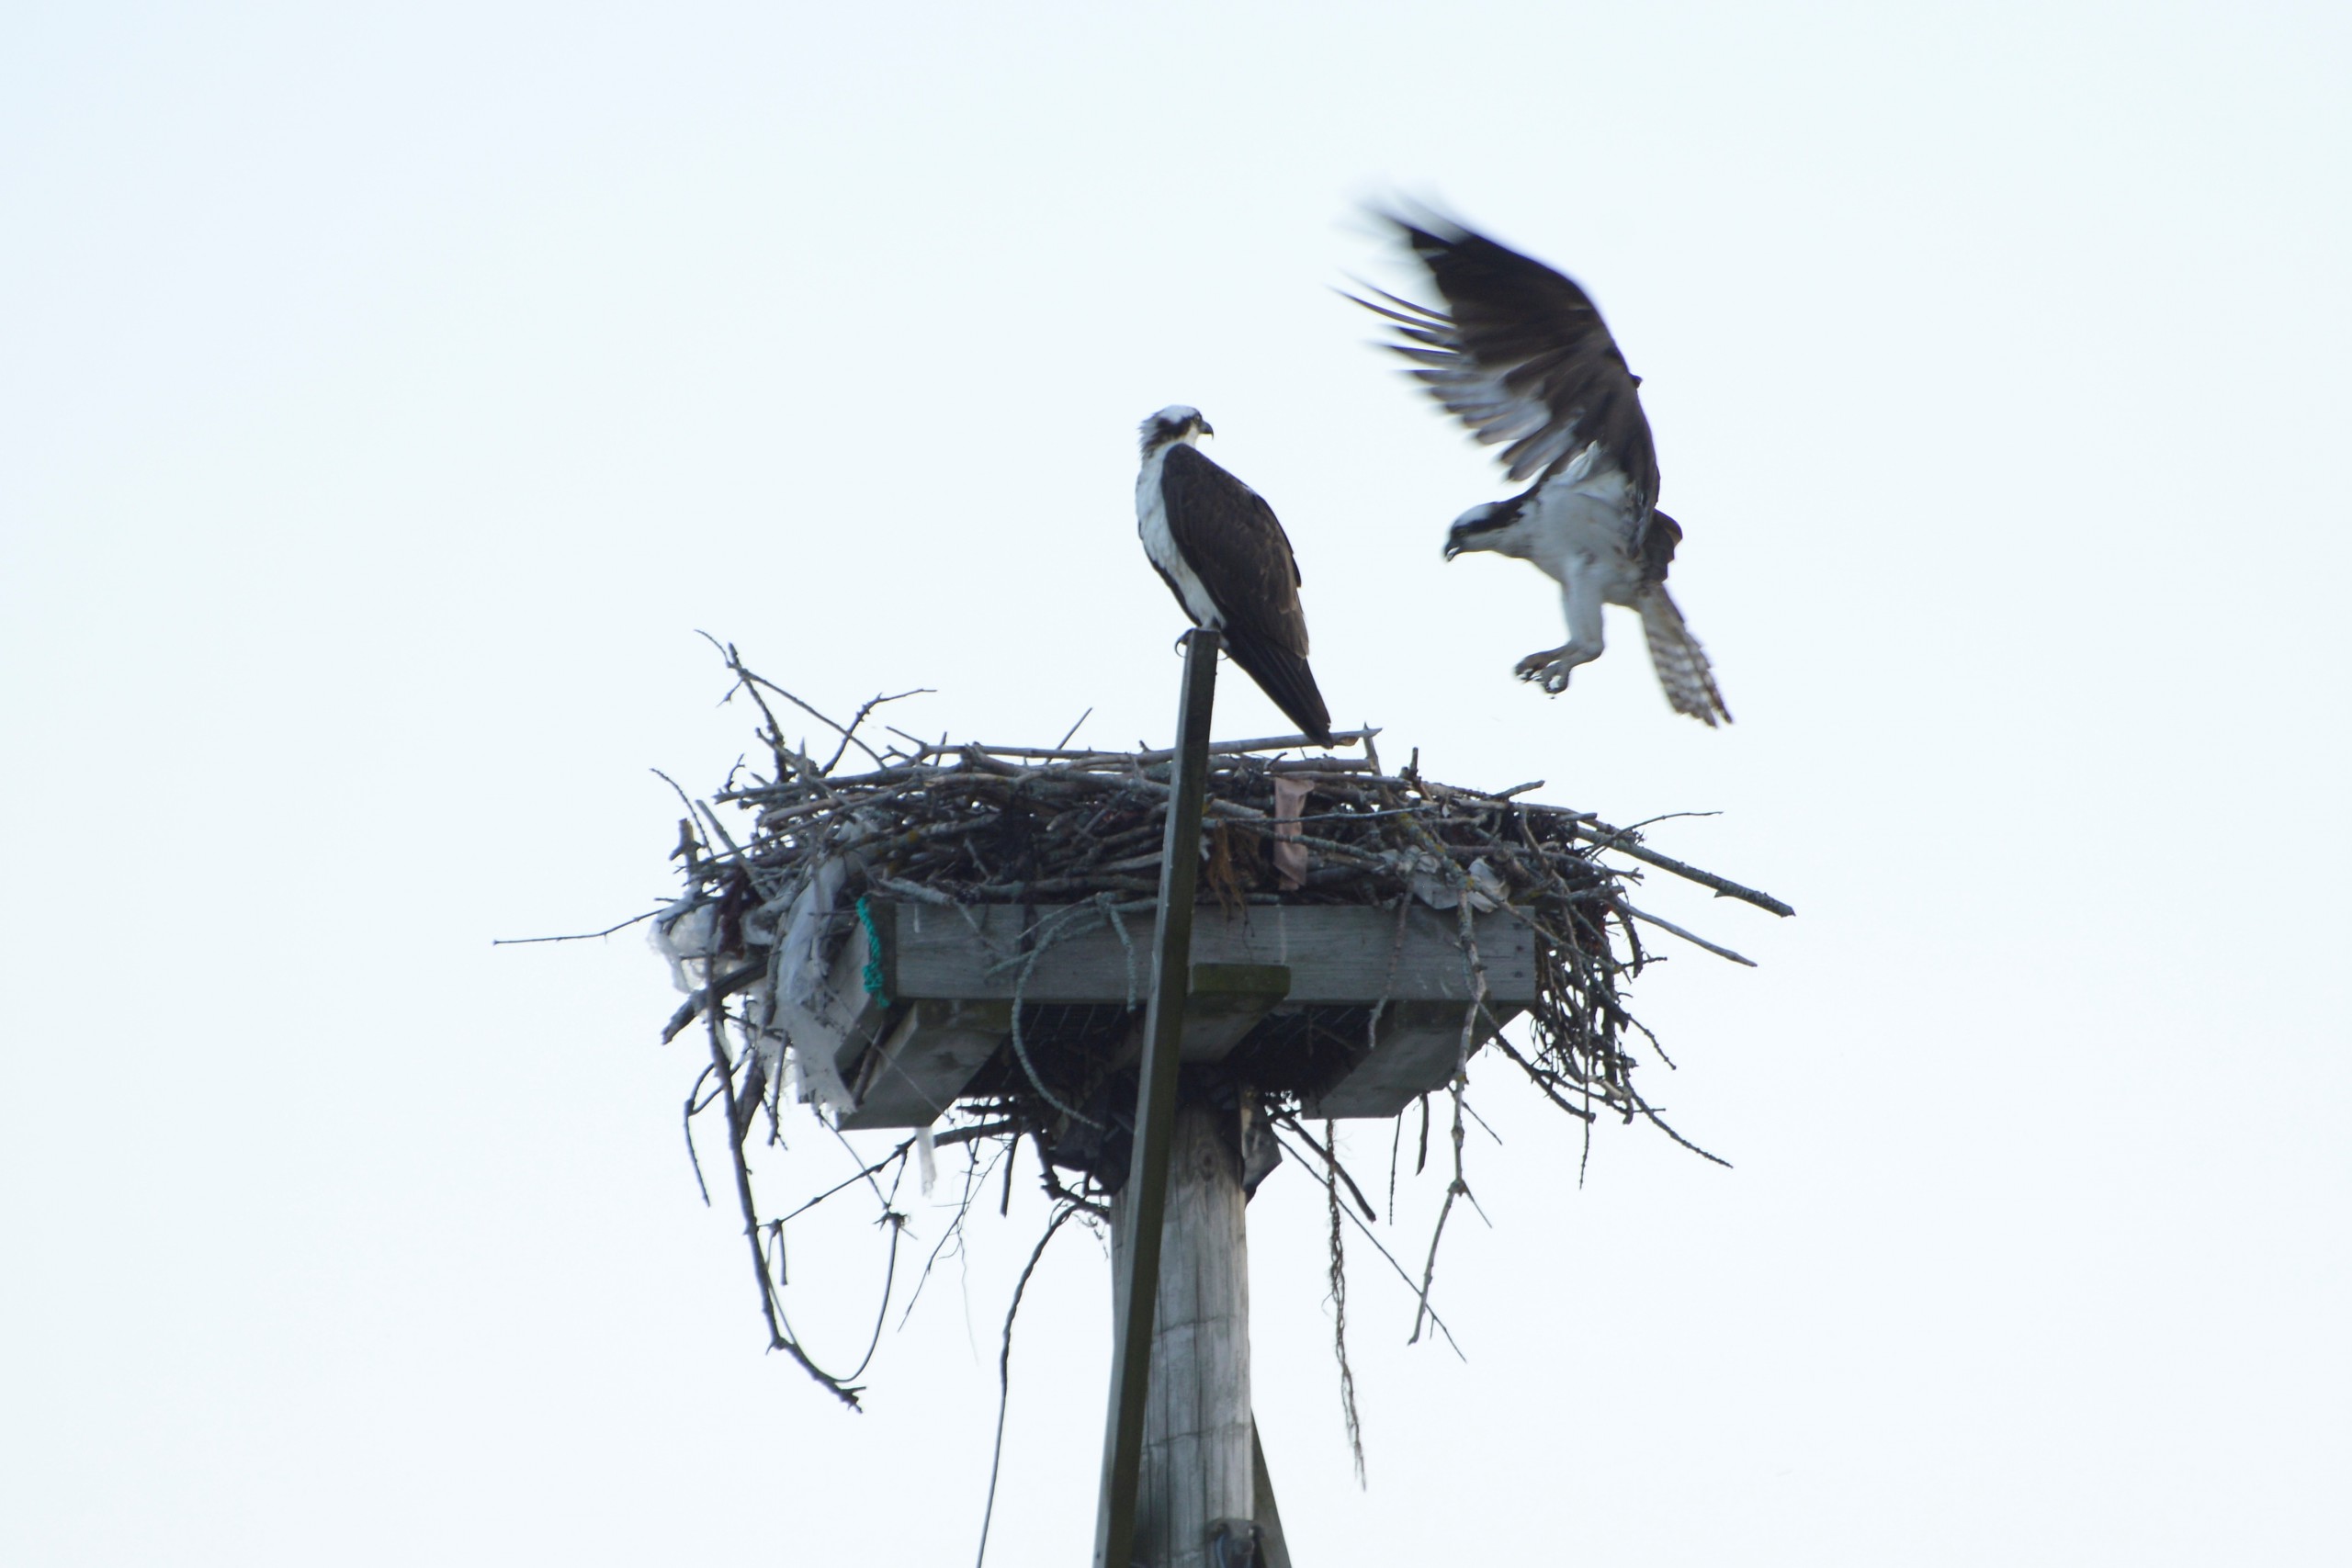 An Osprey lands on a nest